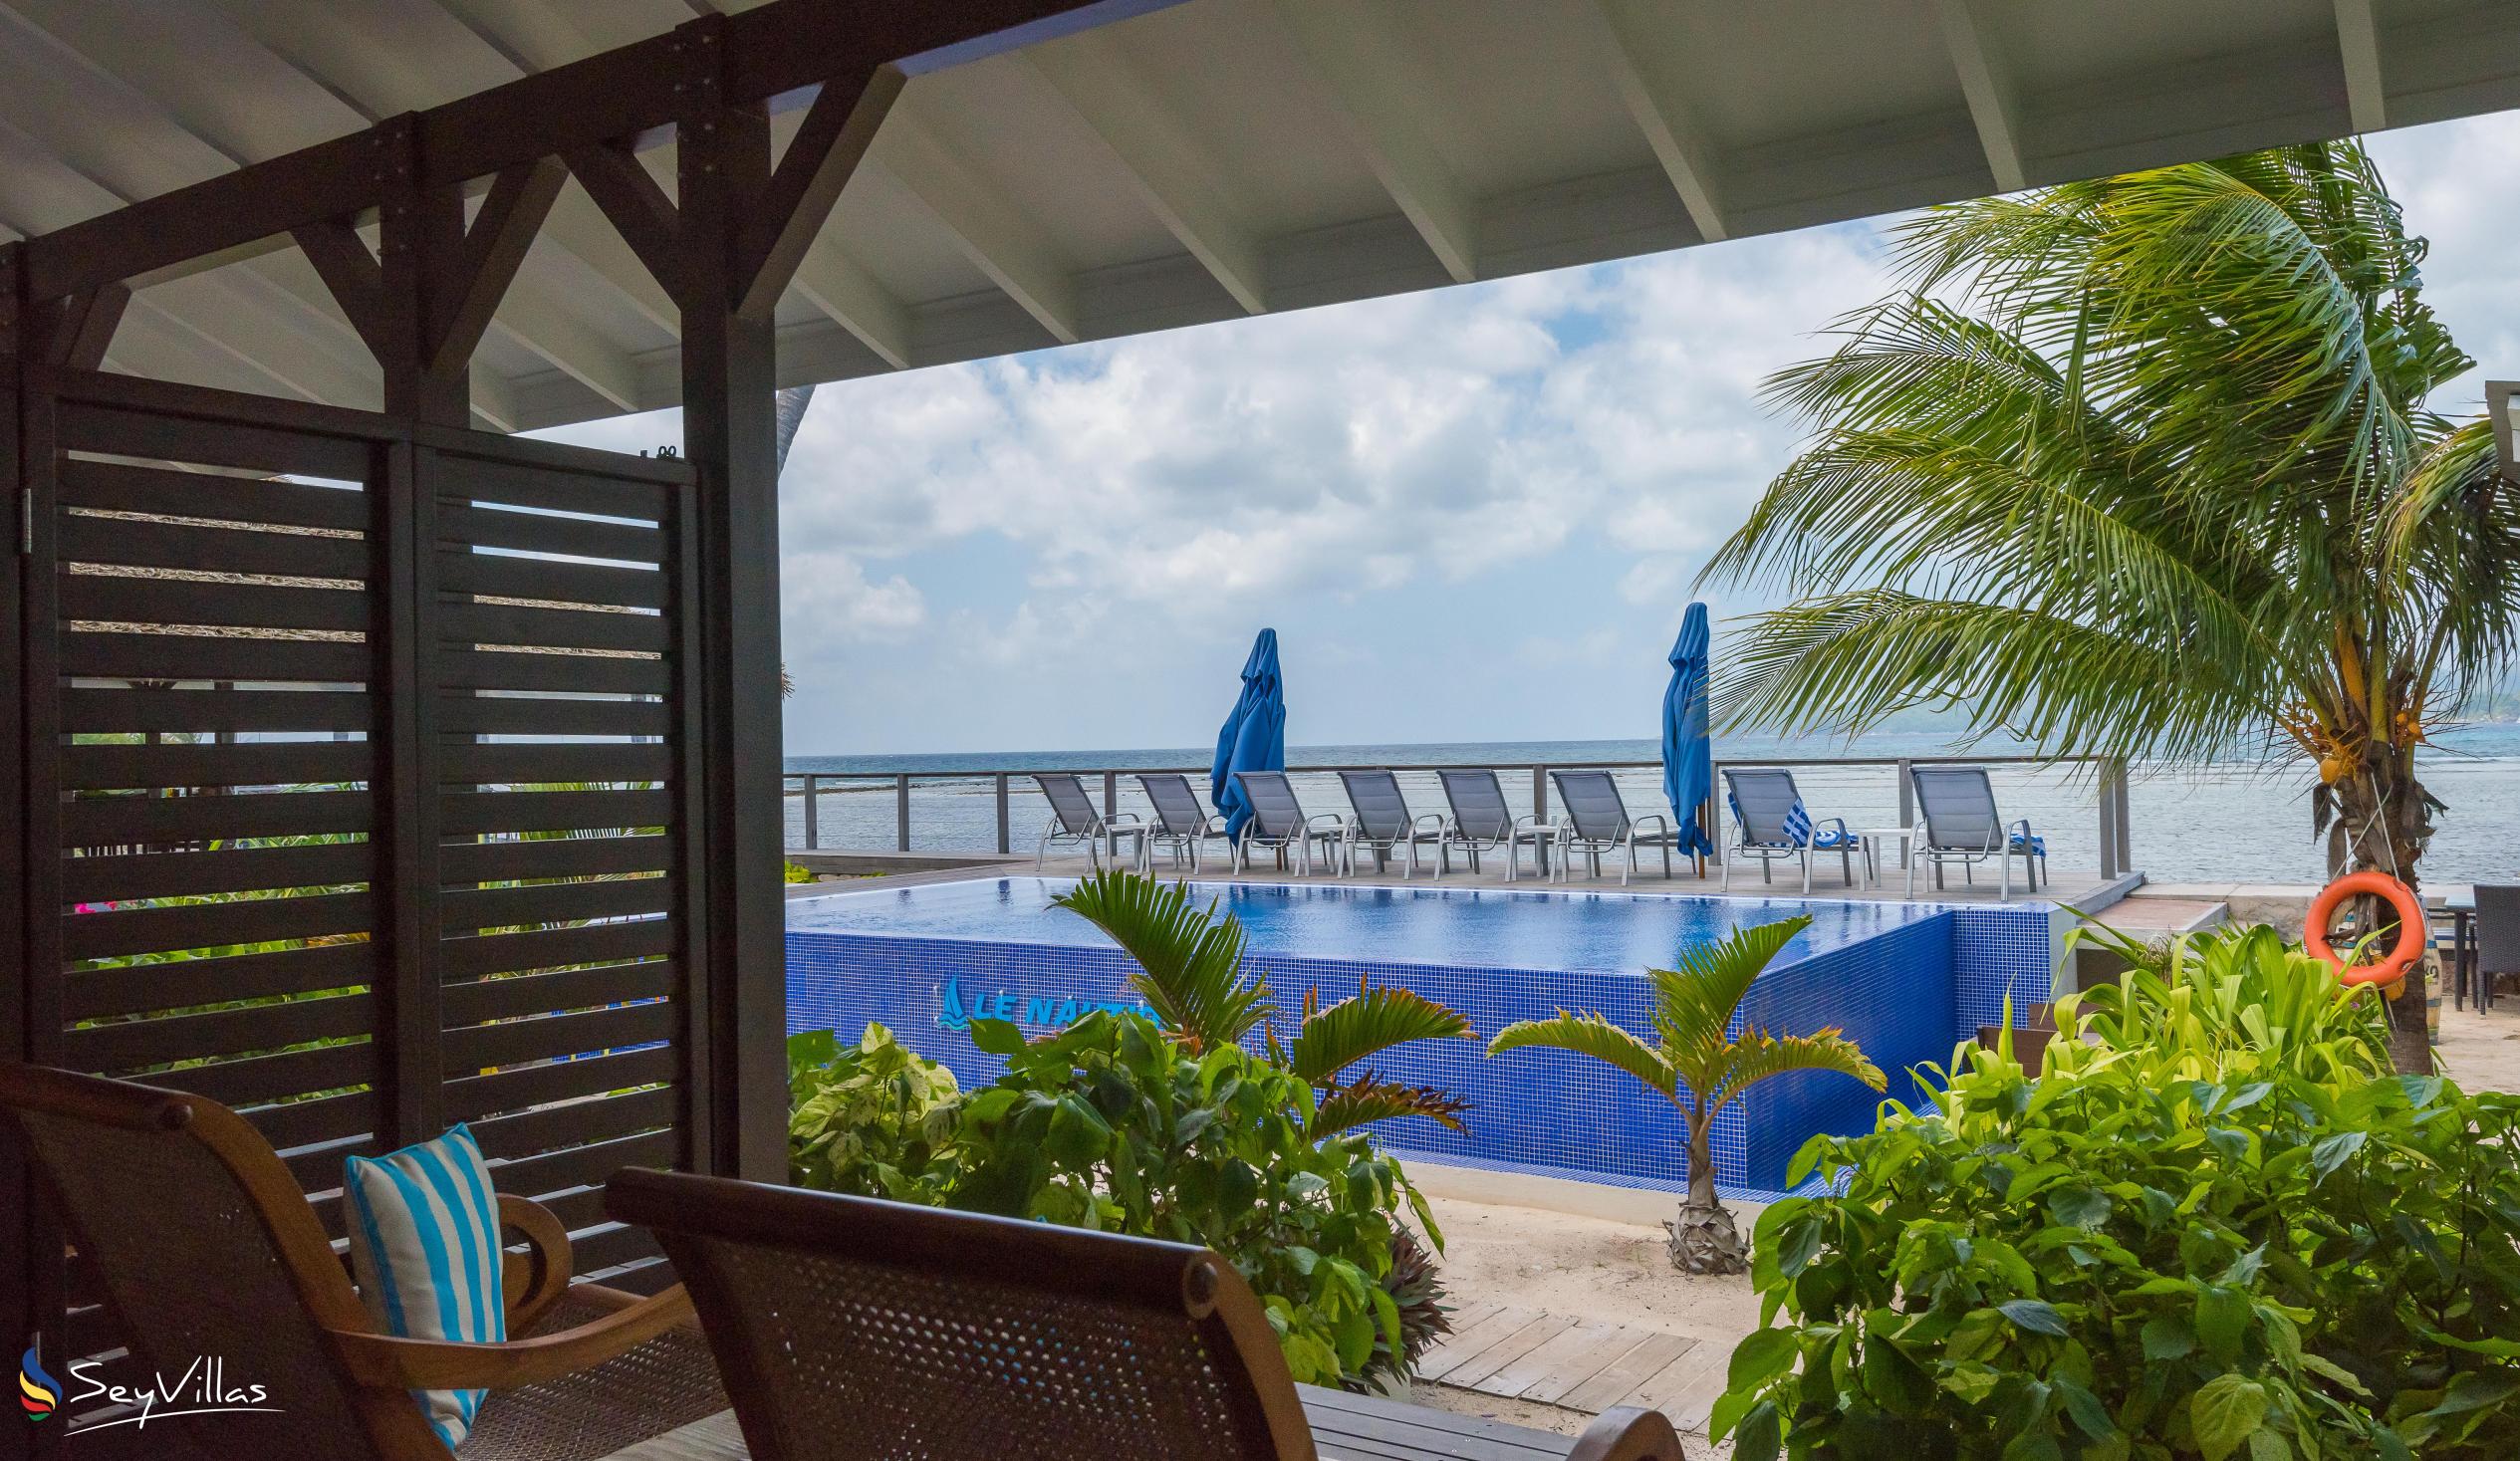 Foto 11: Le Nautique Luxury Waterfront Hotel - La Digue (Seychelles)